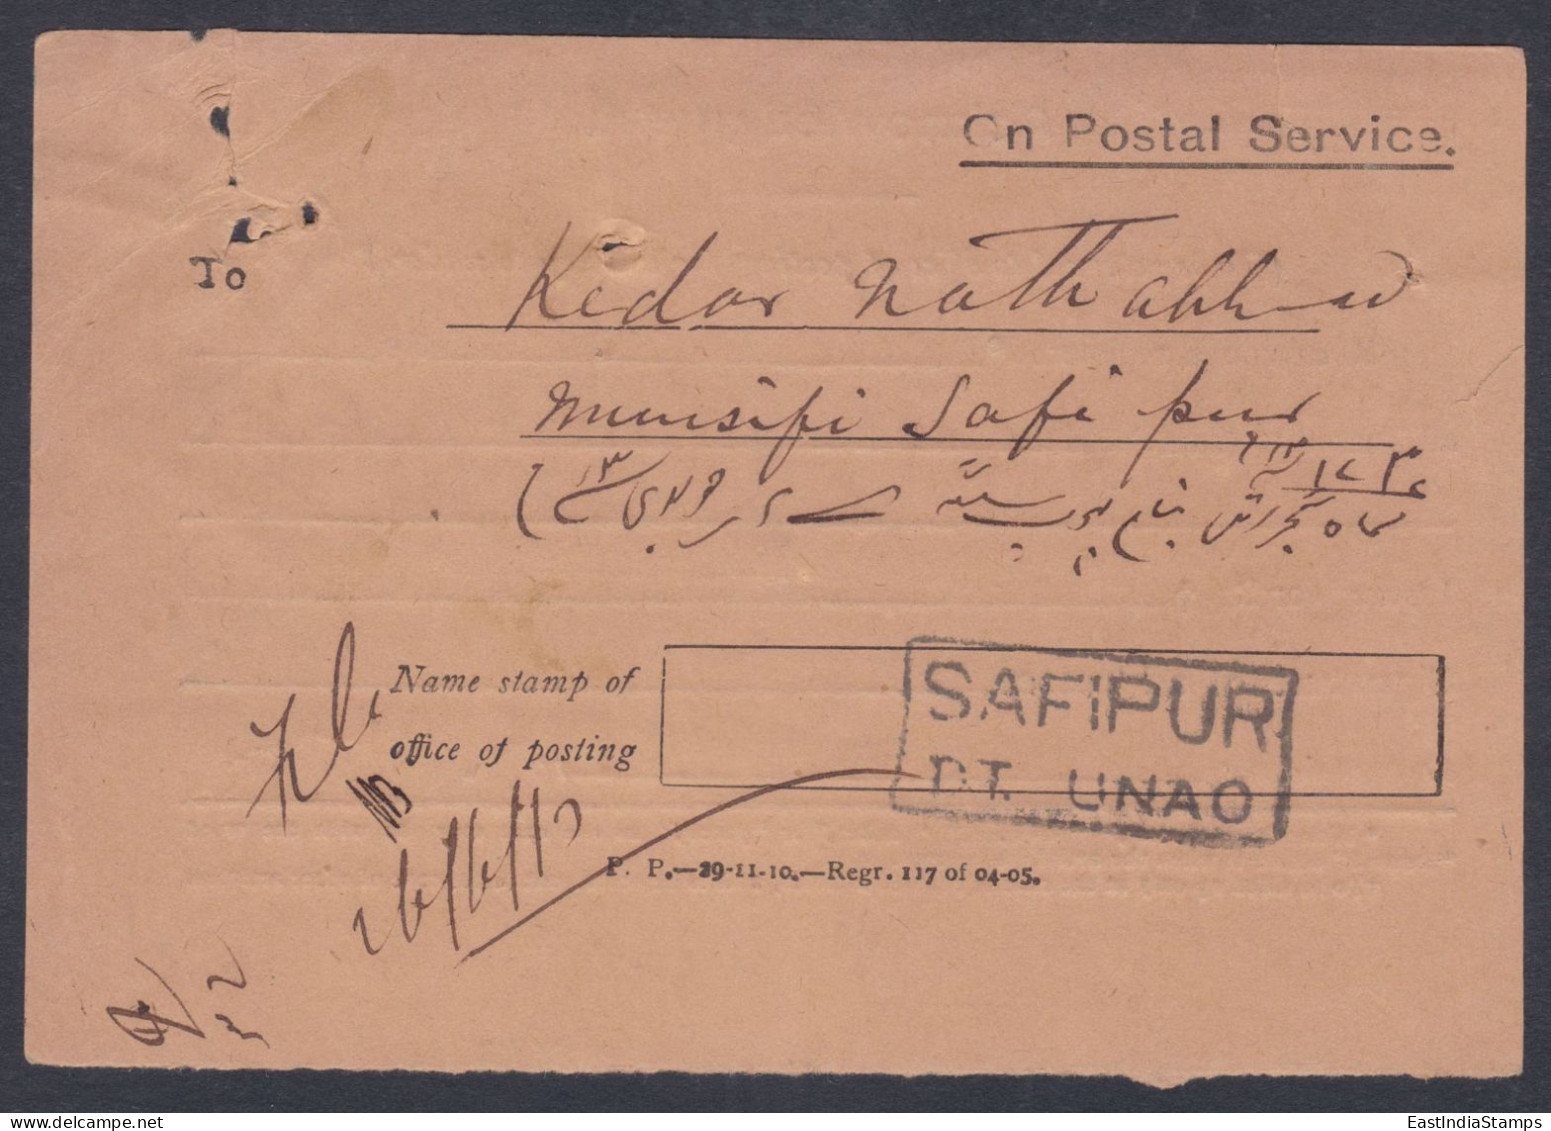 Inde British India 1913 Used Registered Cover, Civil Judge, Lucknow, King George V, Stamps, Return Mail, Acknowledgement - 1911-35 King George V